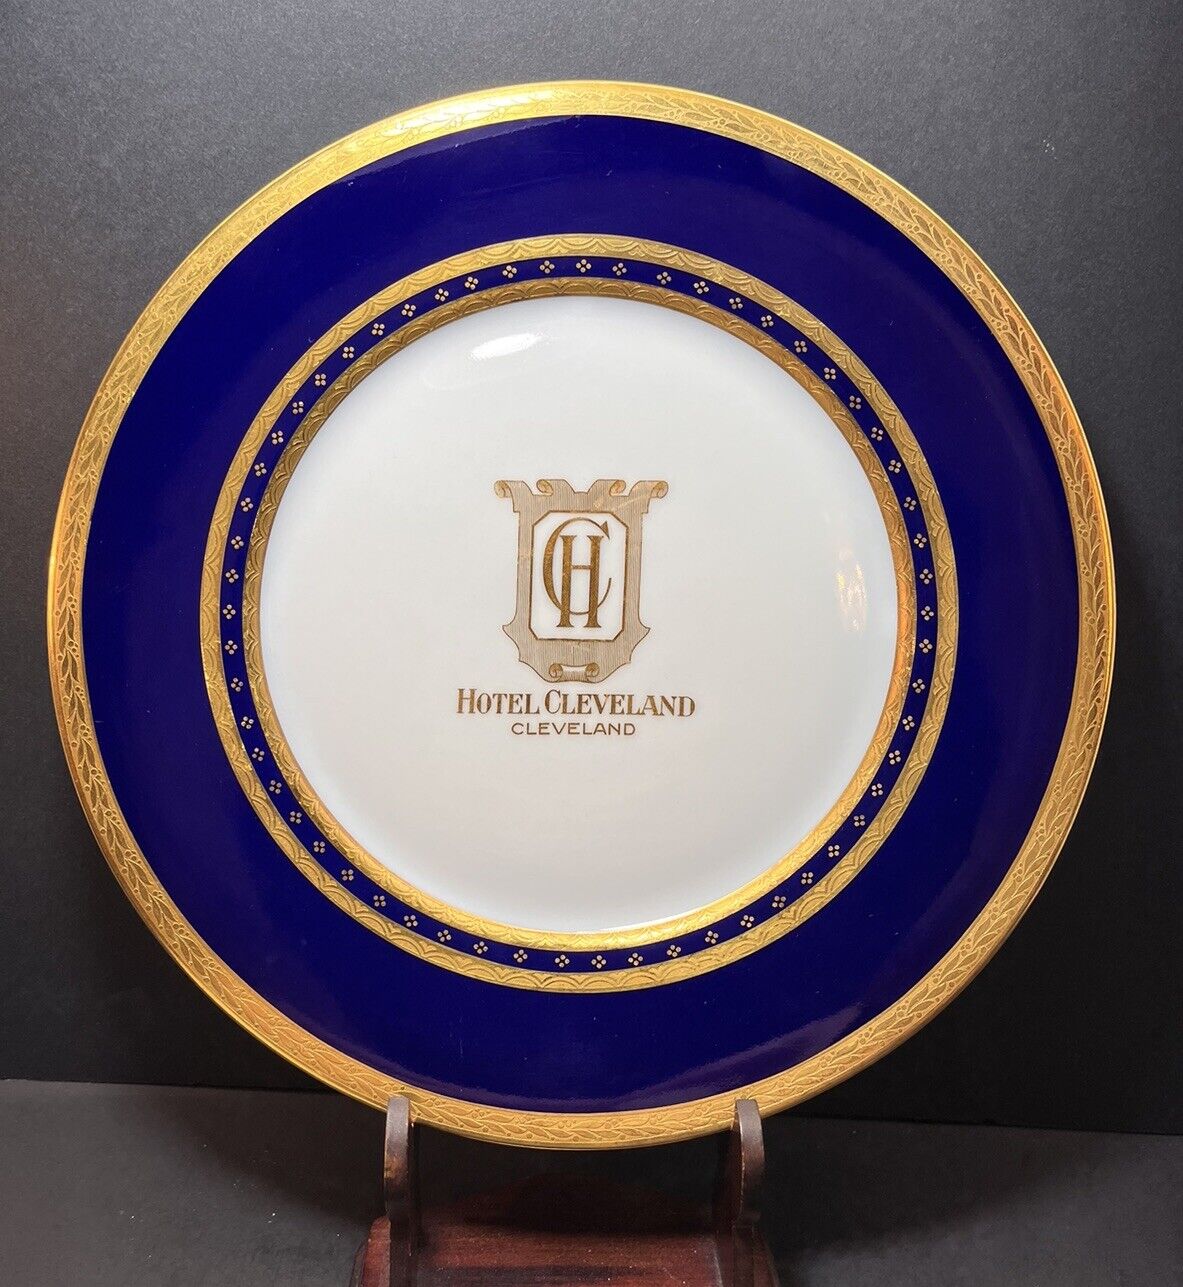 1926 HOTEL CLEVELAND Restaurant Plate Bauscher China Schiller Cobalt & Gold